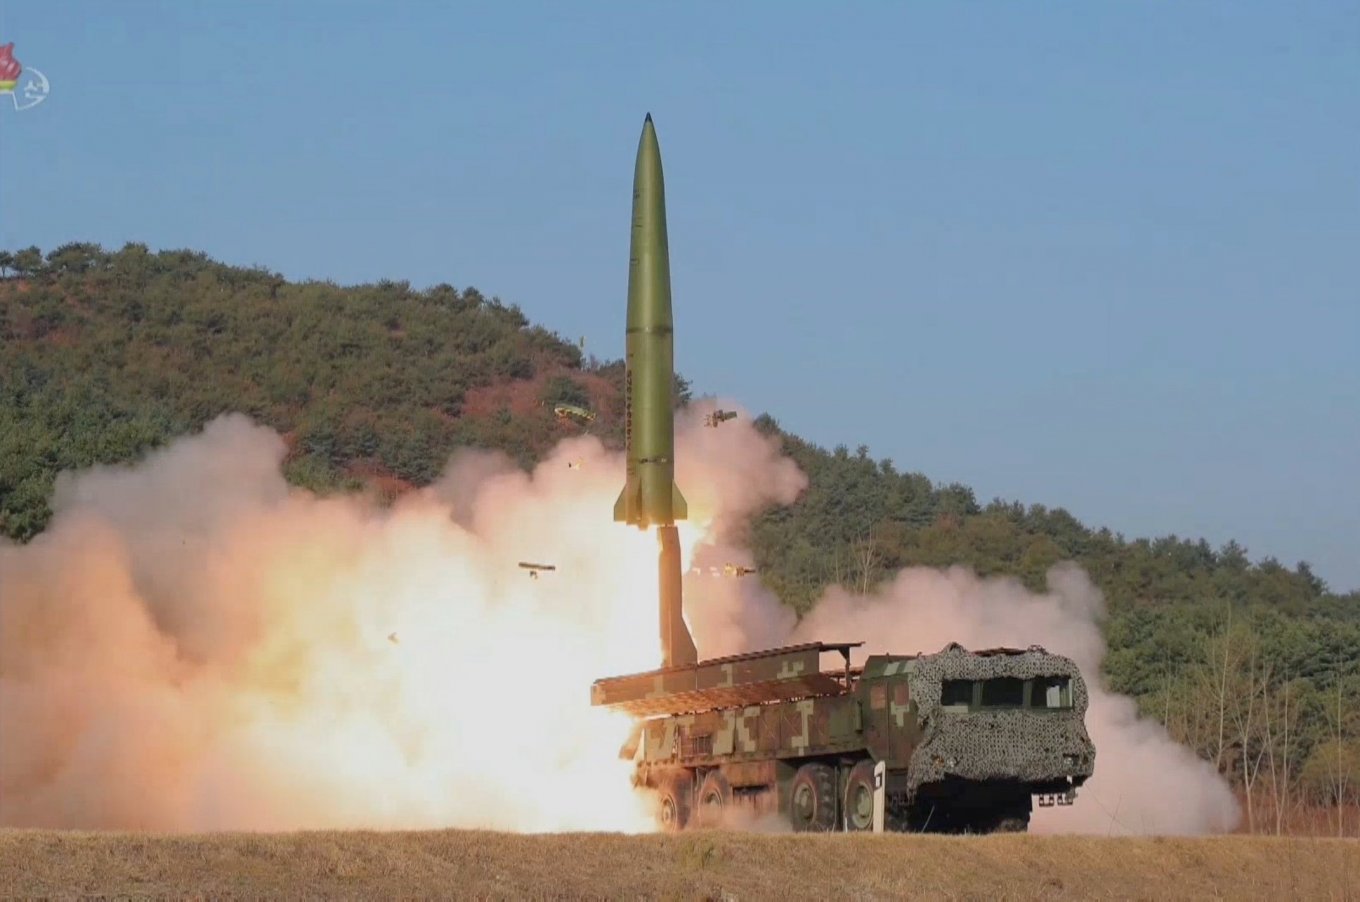 KN-23 short range ballistic missile system